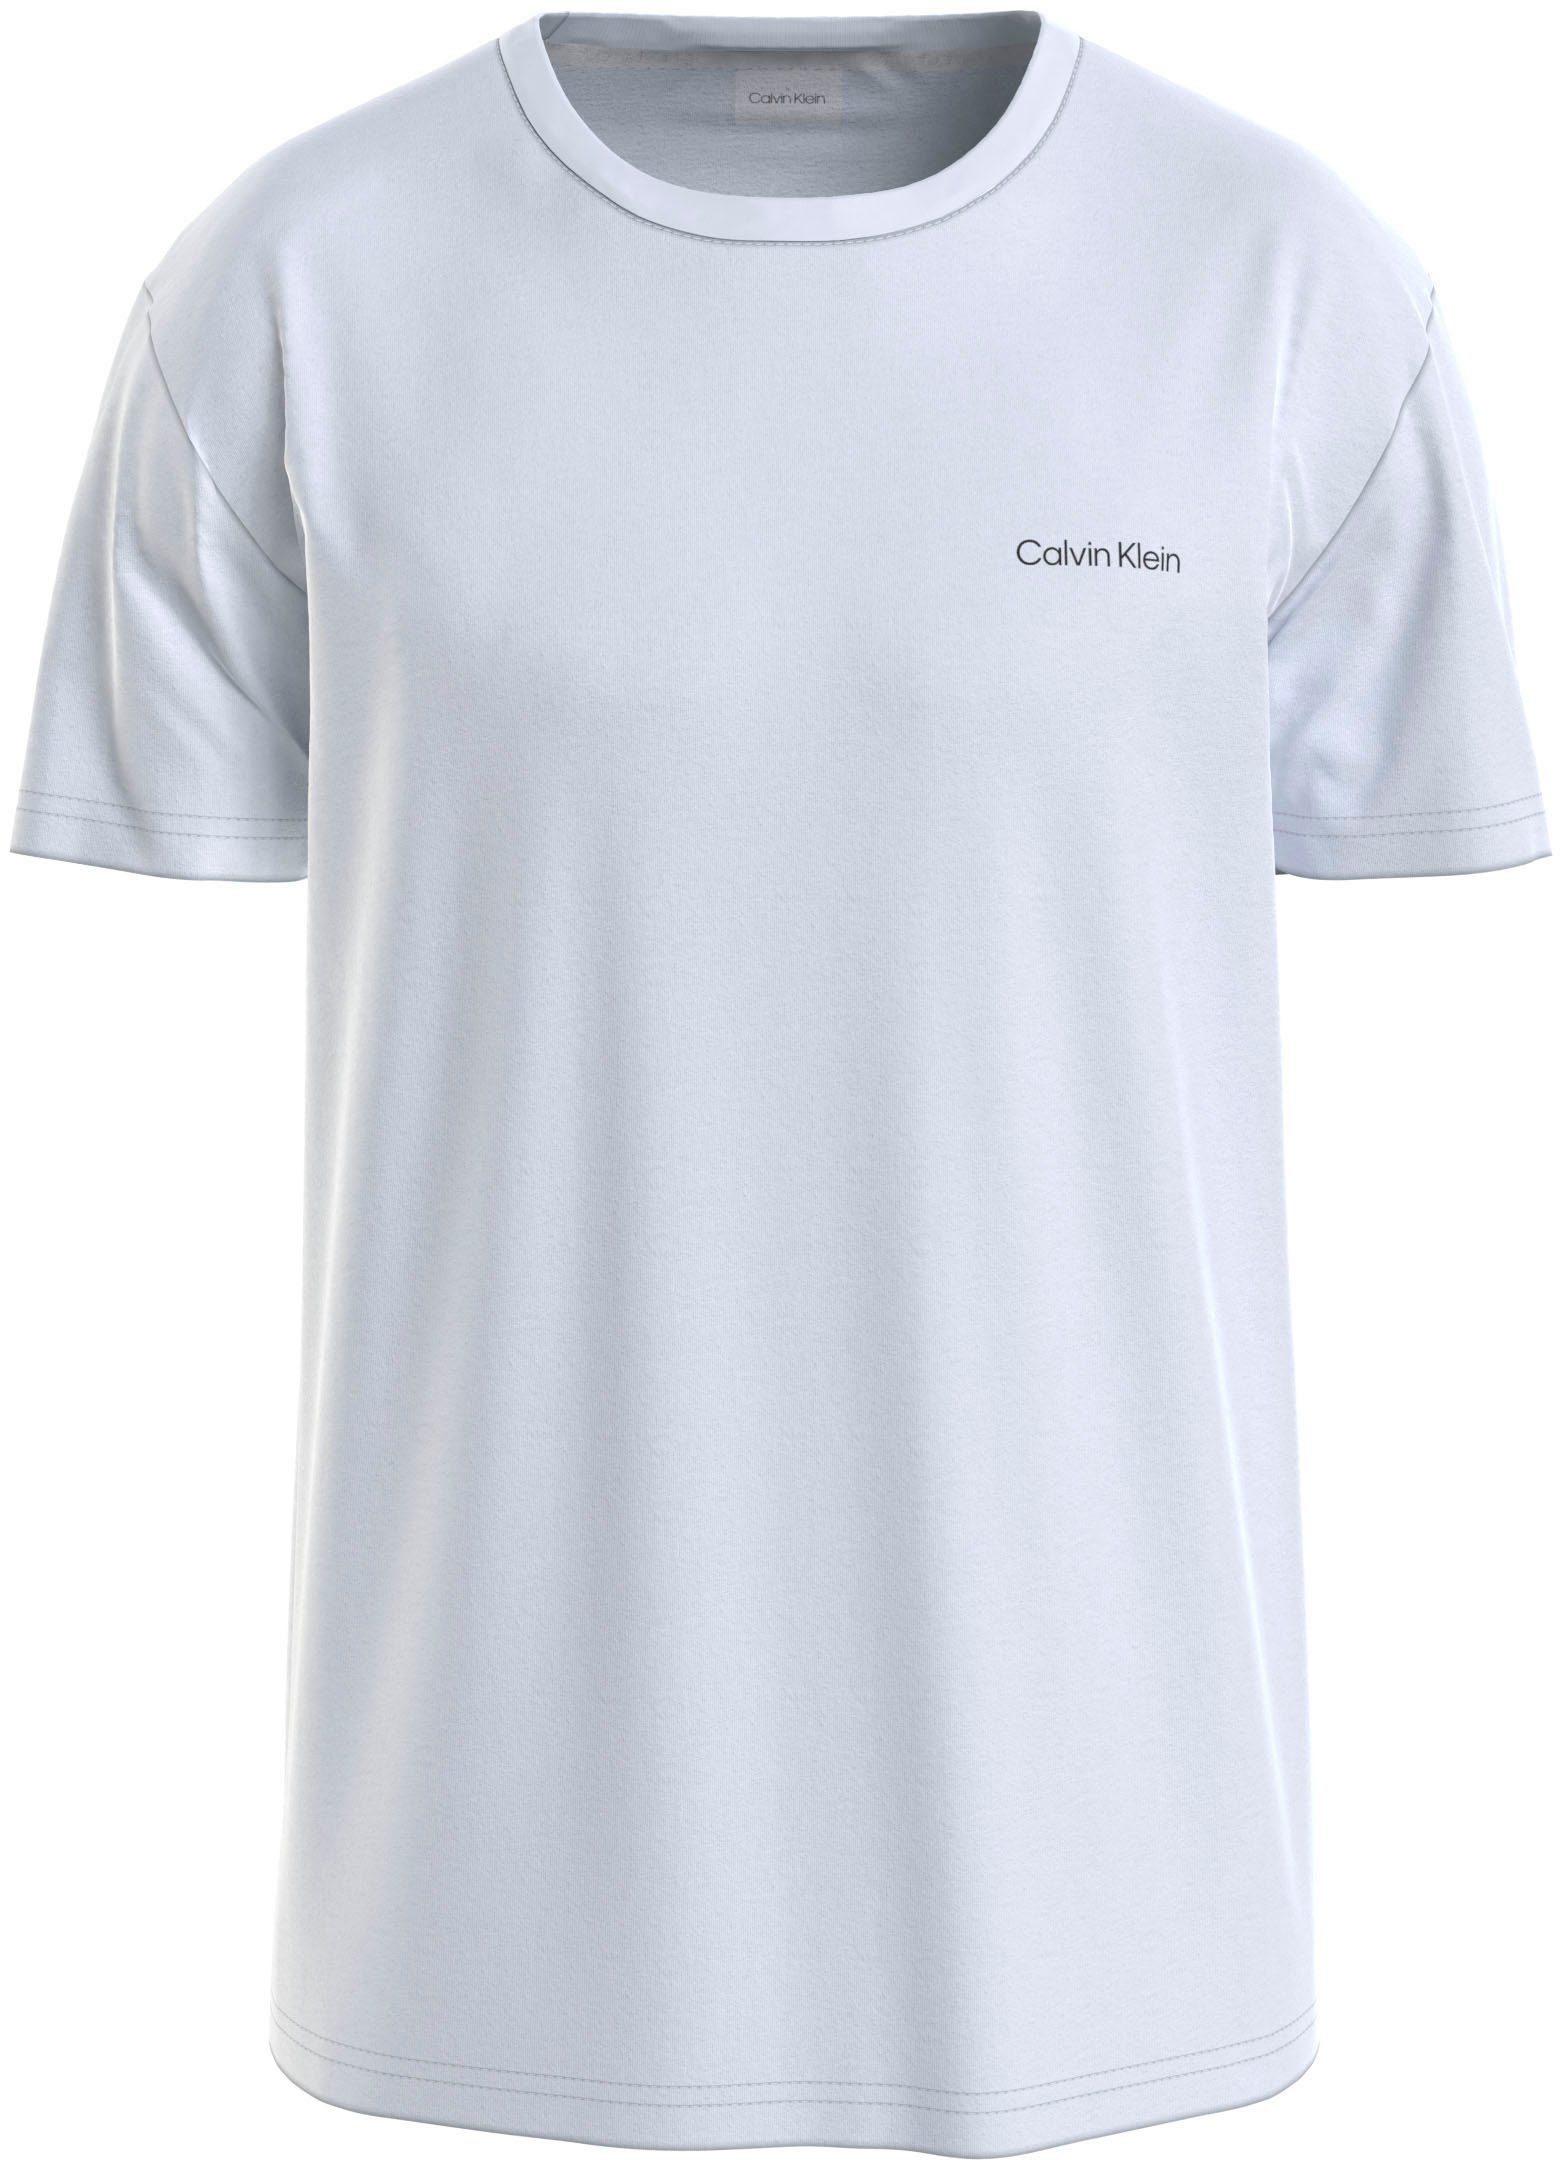 Calvin Klein T-Shirt »Micro Logo« online kaufen | OTTO